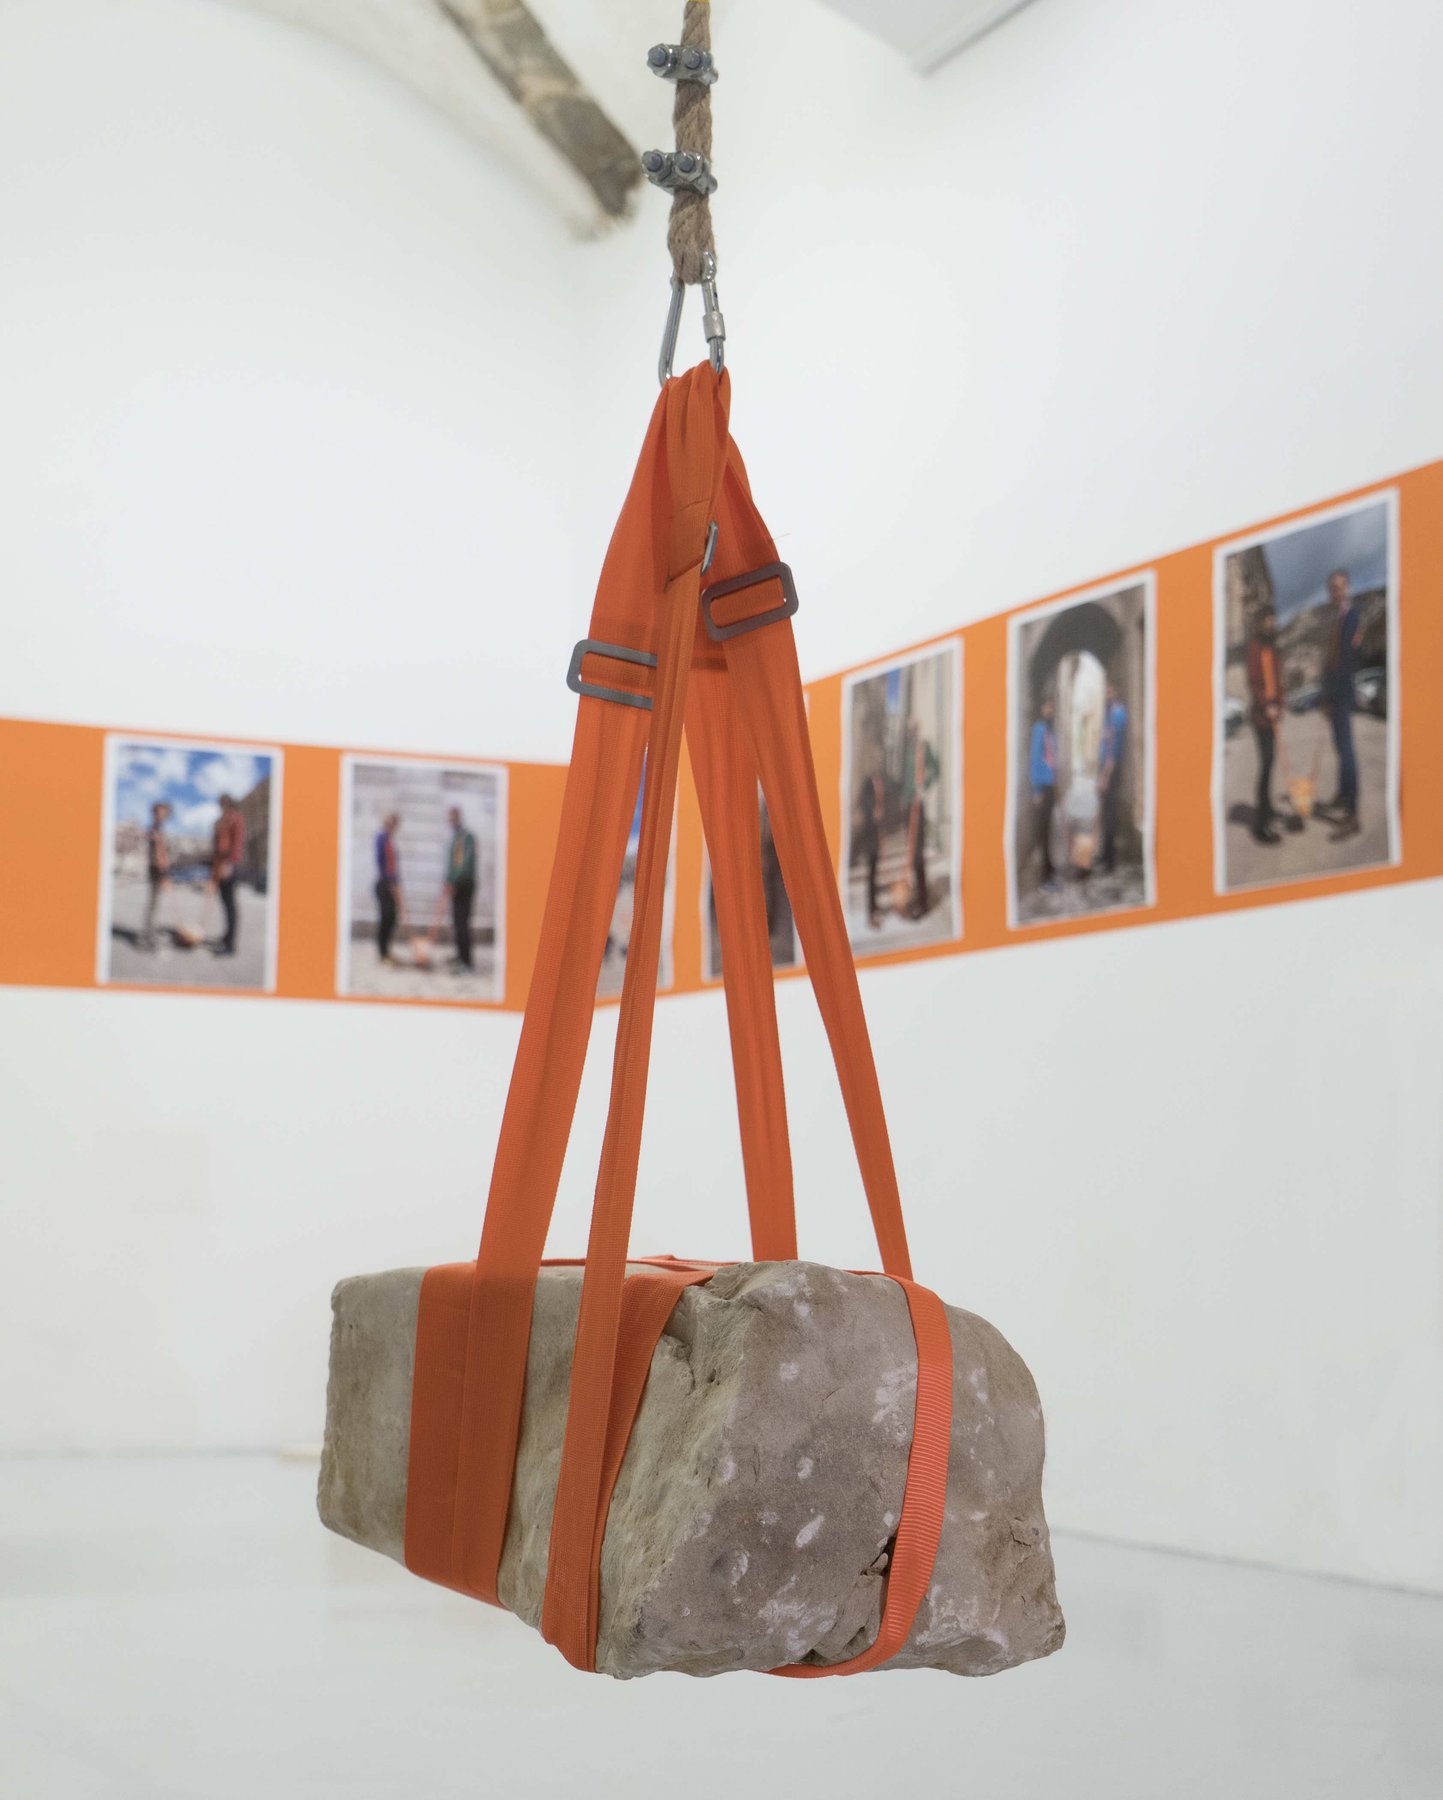 Giuseppefraugallery, La Processione delle Pietre, installation view at Laveronica arte contemporanea